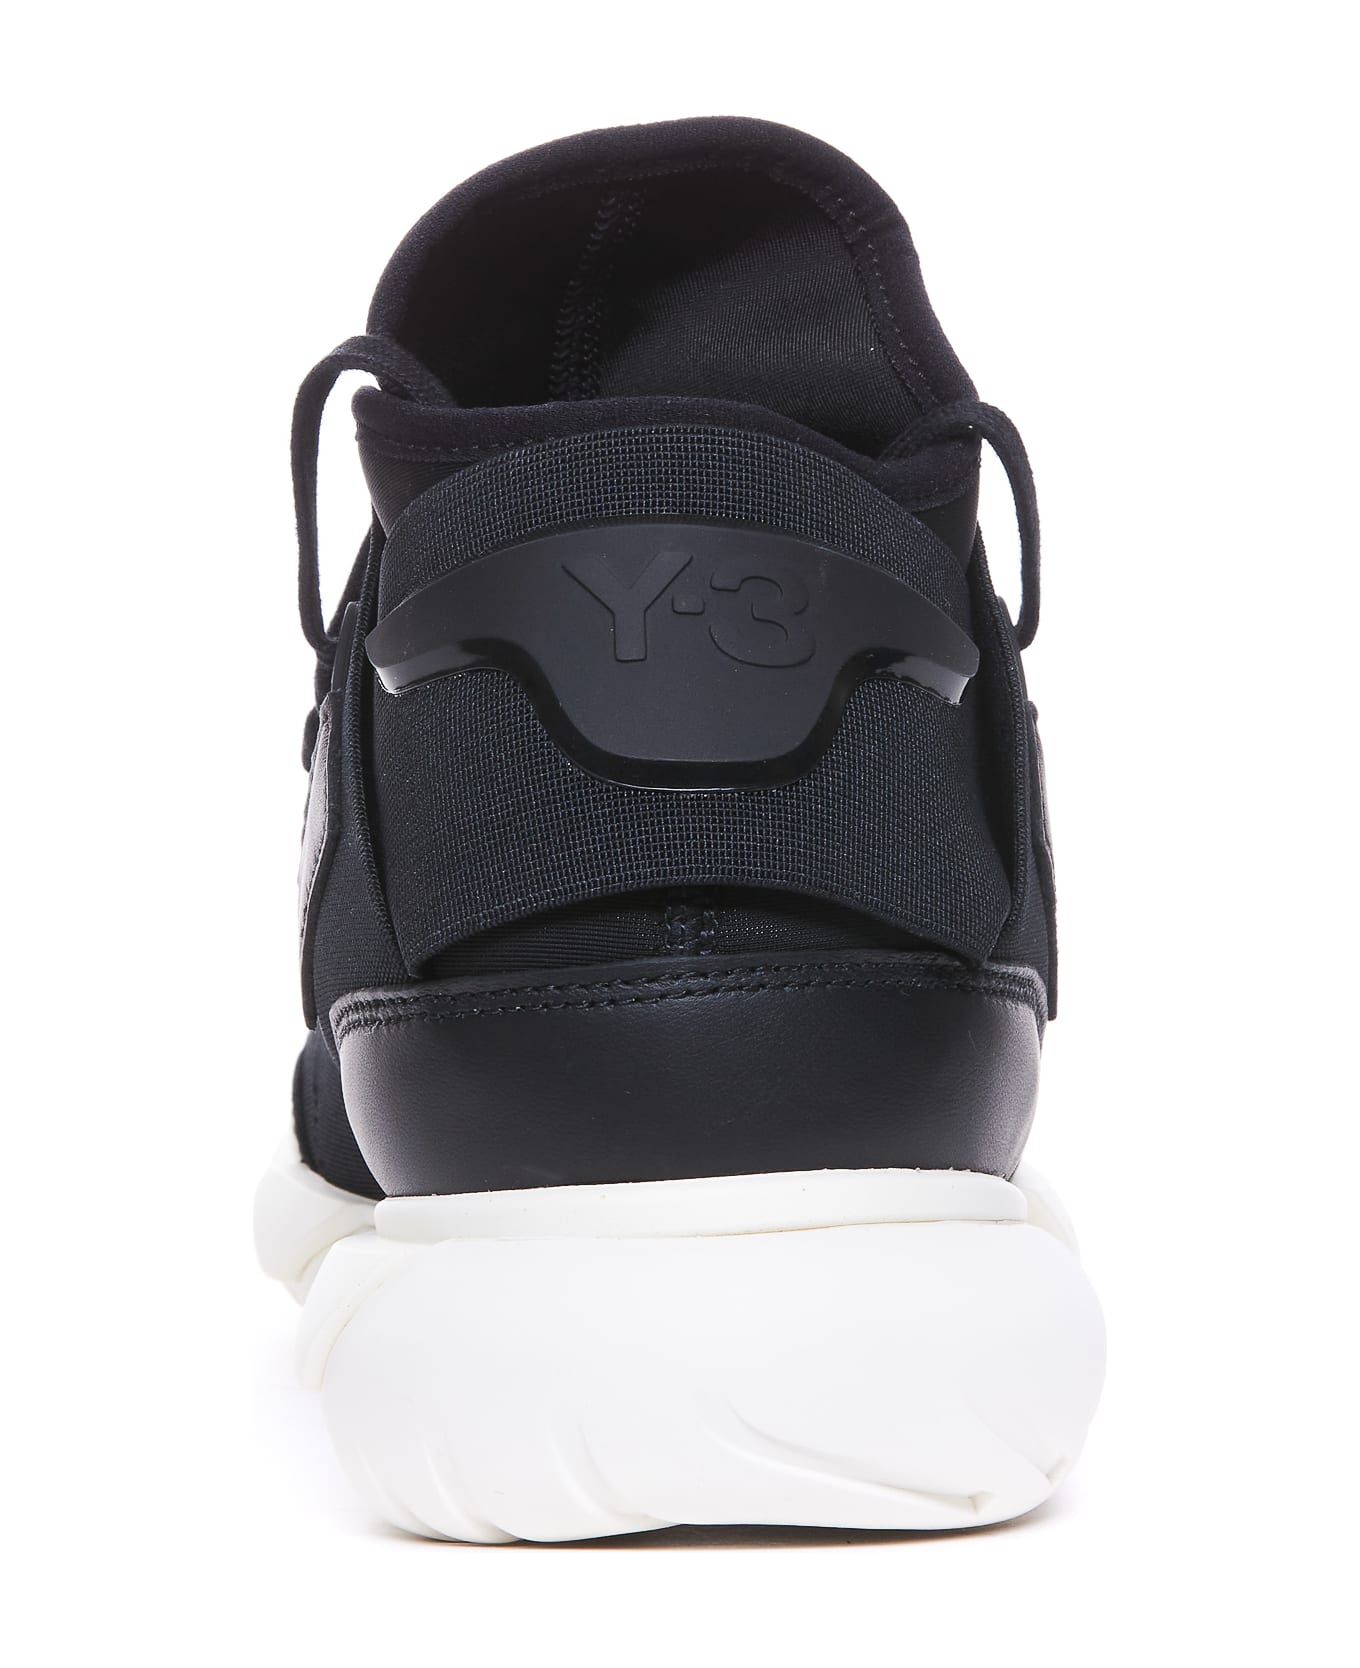 Y-3 Qasa Sneakers - Black